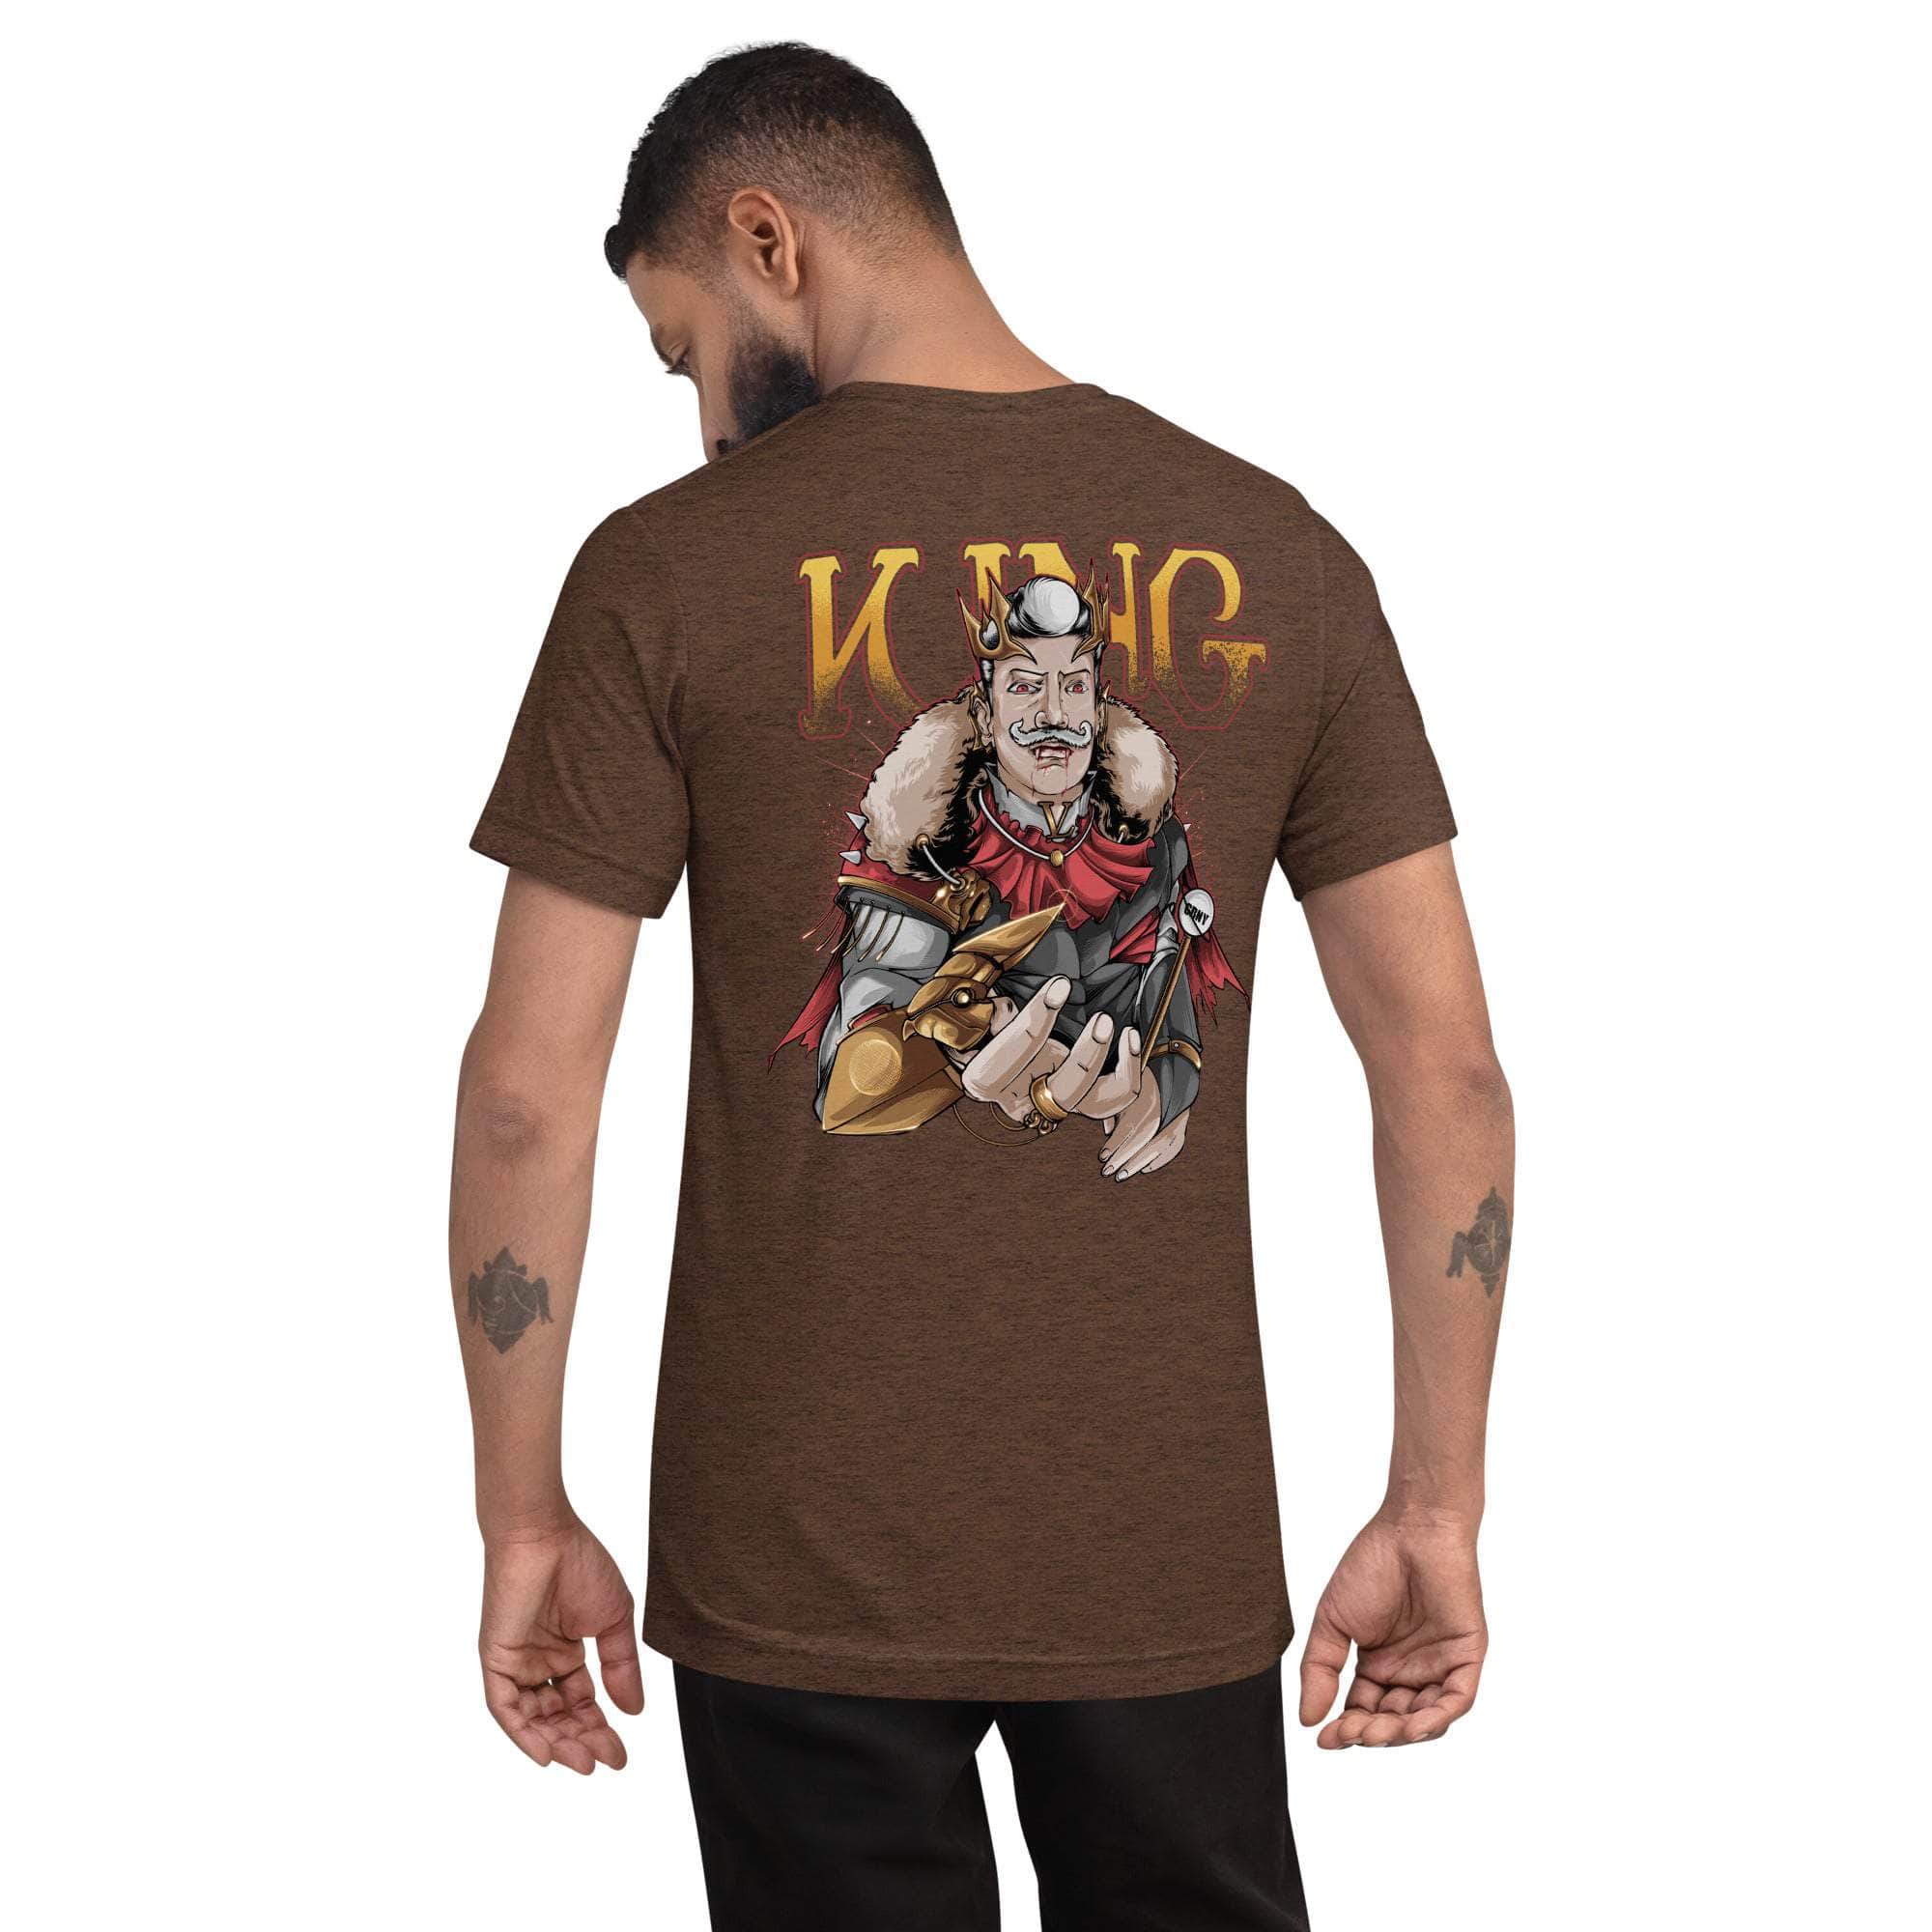 GBNY Brown Triblend / XS Vamp Life X GBNY "Vamp King" T-shirt - Men's 8741511_6496